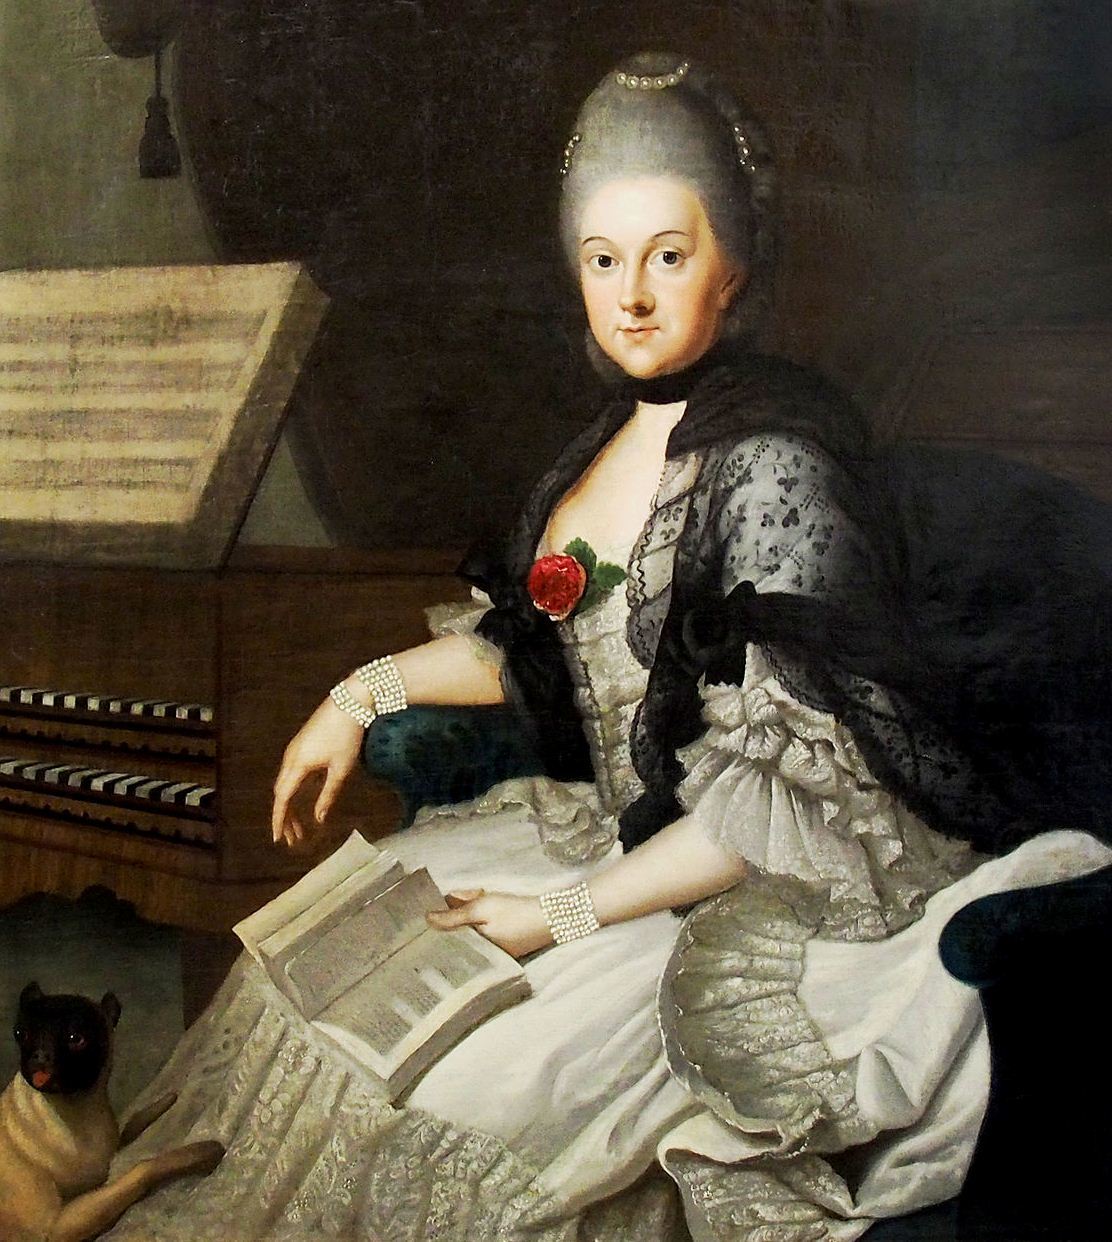 Анна Амалия Брауншвейг-Вольфенбюттельская (1739-1807) - герцогиня Саксен-Ве...